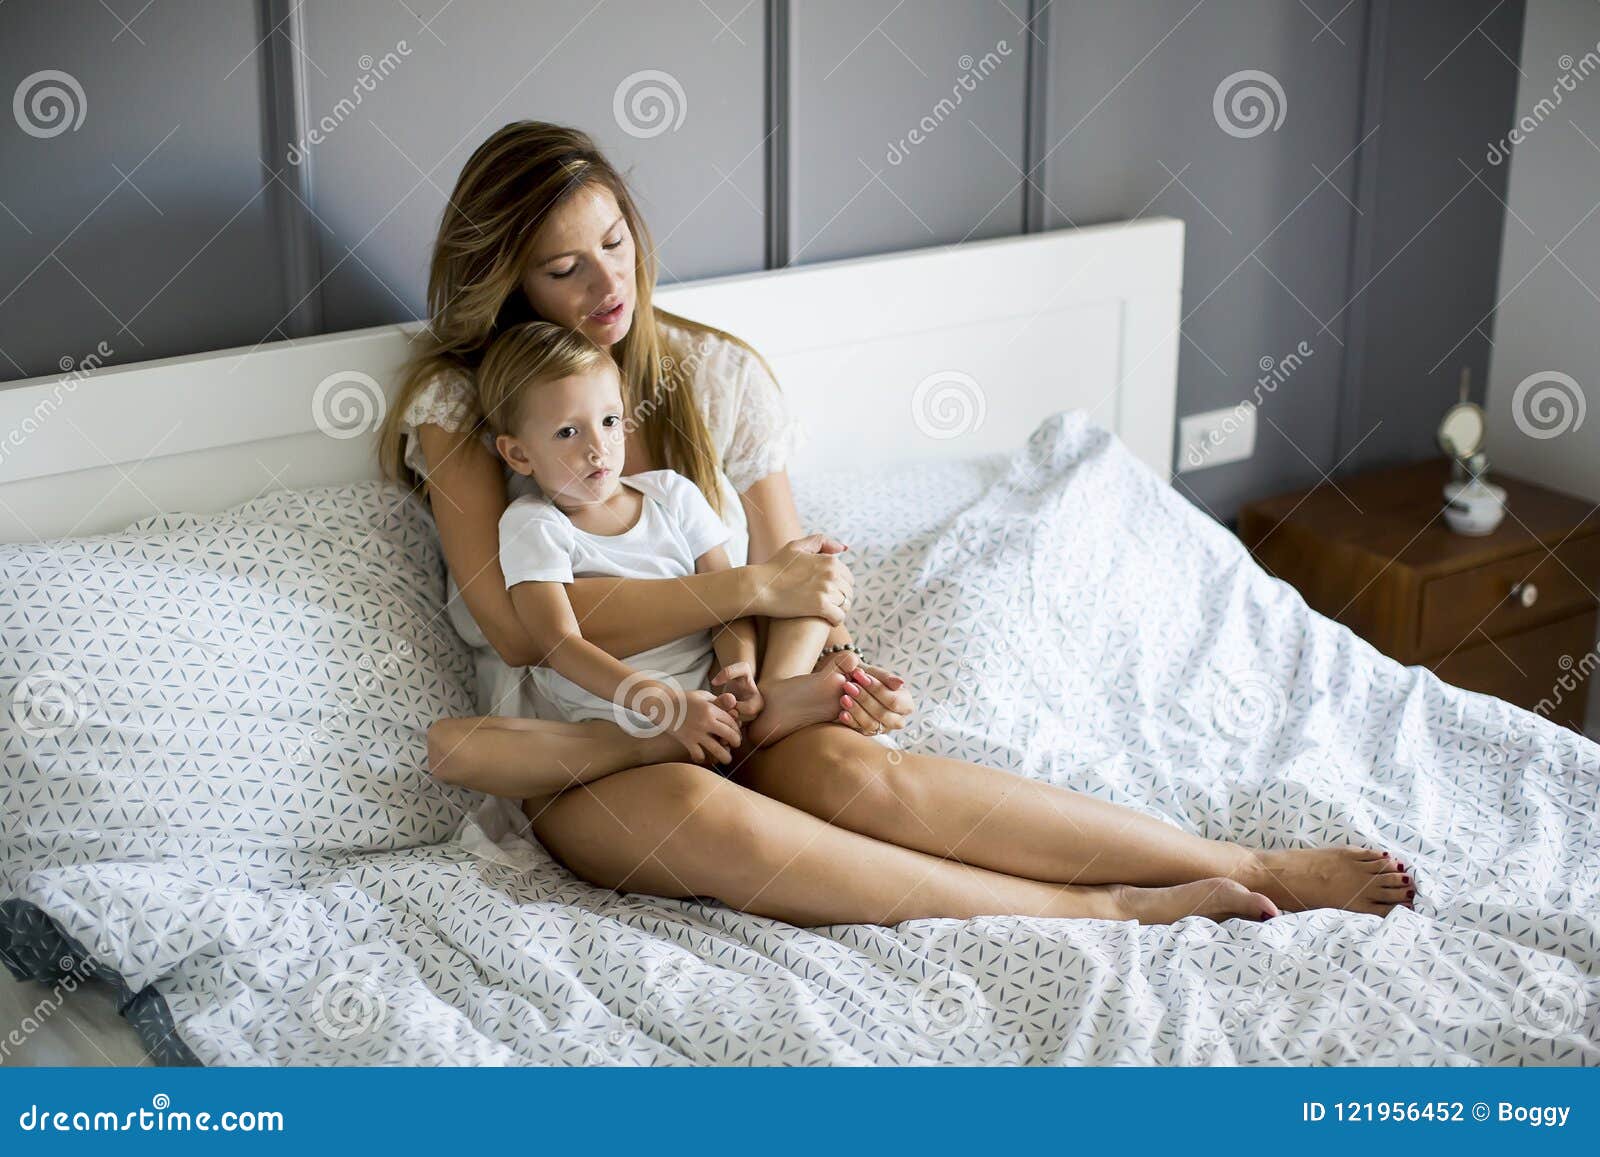 Мама в постели сына видео. Молодые мамочки в постели. Фотосессия мама с сыном в постели. Молодая мама в постели. Сынишка с мамашей в постели.